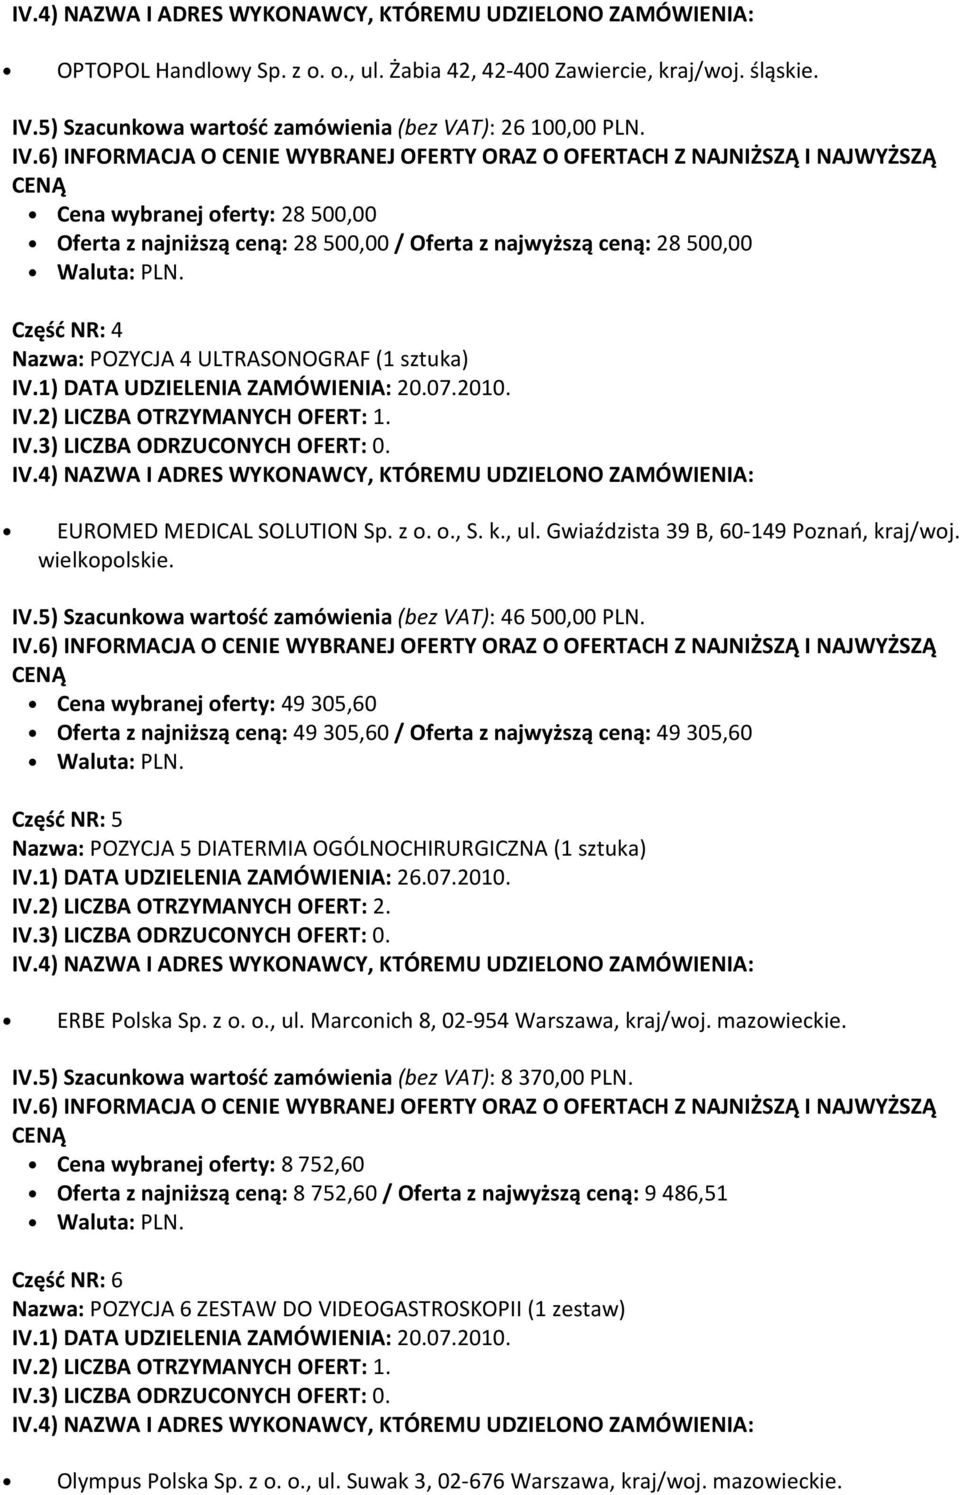 k., ul. Gwiaździsta 39 B, 60-149 Poznań, kraj/woj. wielkopolskie. IV.5) Szacunkowa wartość zamówienia (bez VAT): 46 500,00 PLN.